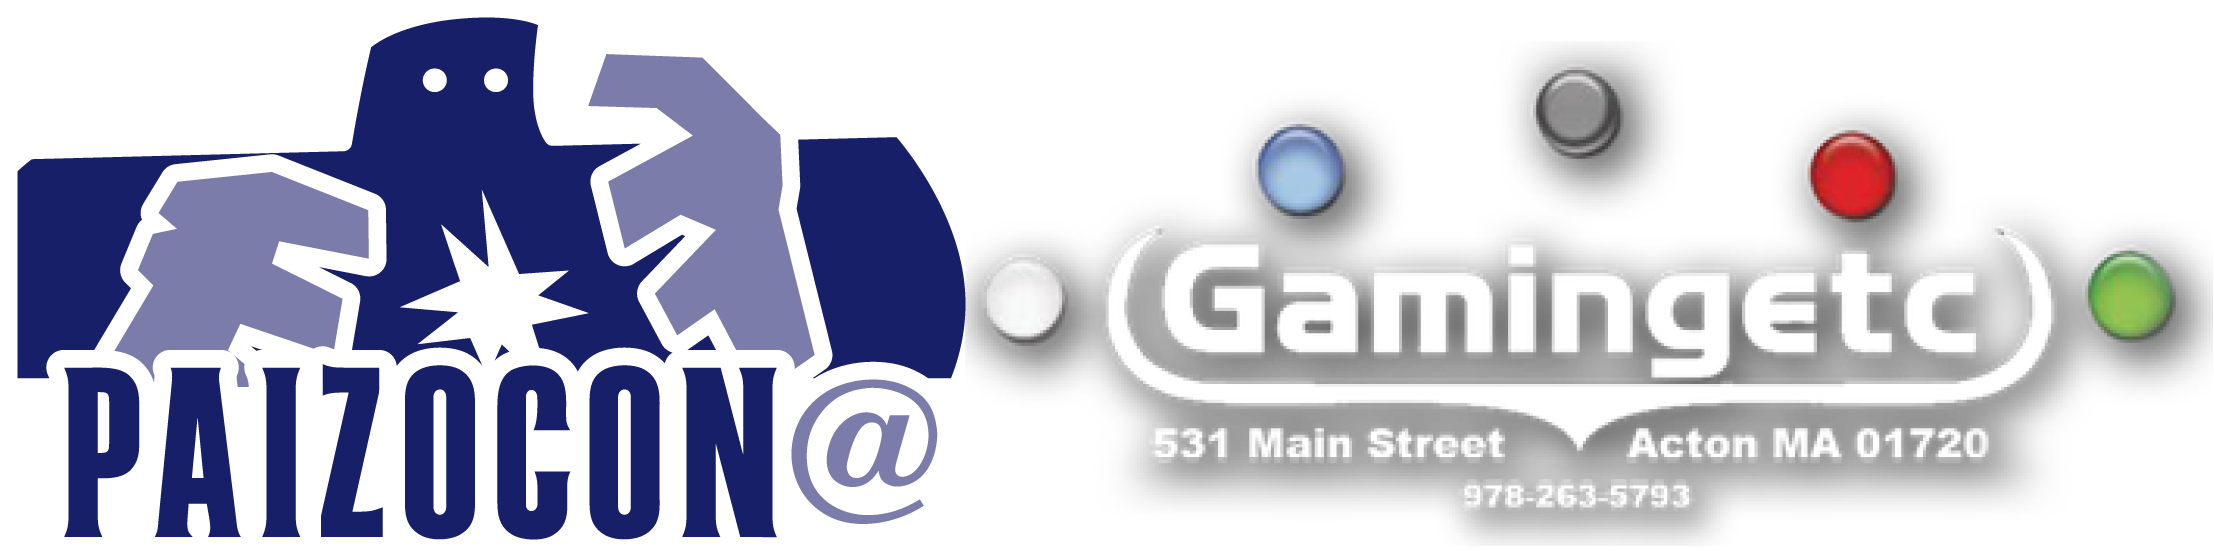 PaizoCon@Gaming Etc Logo